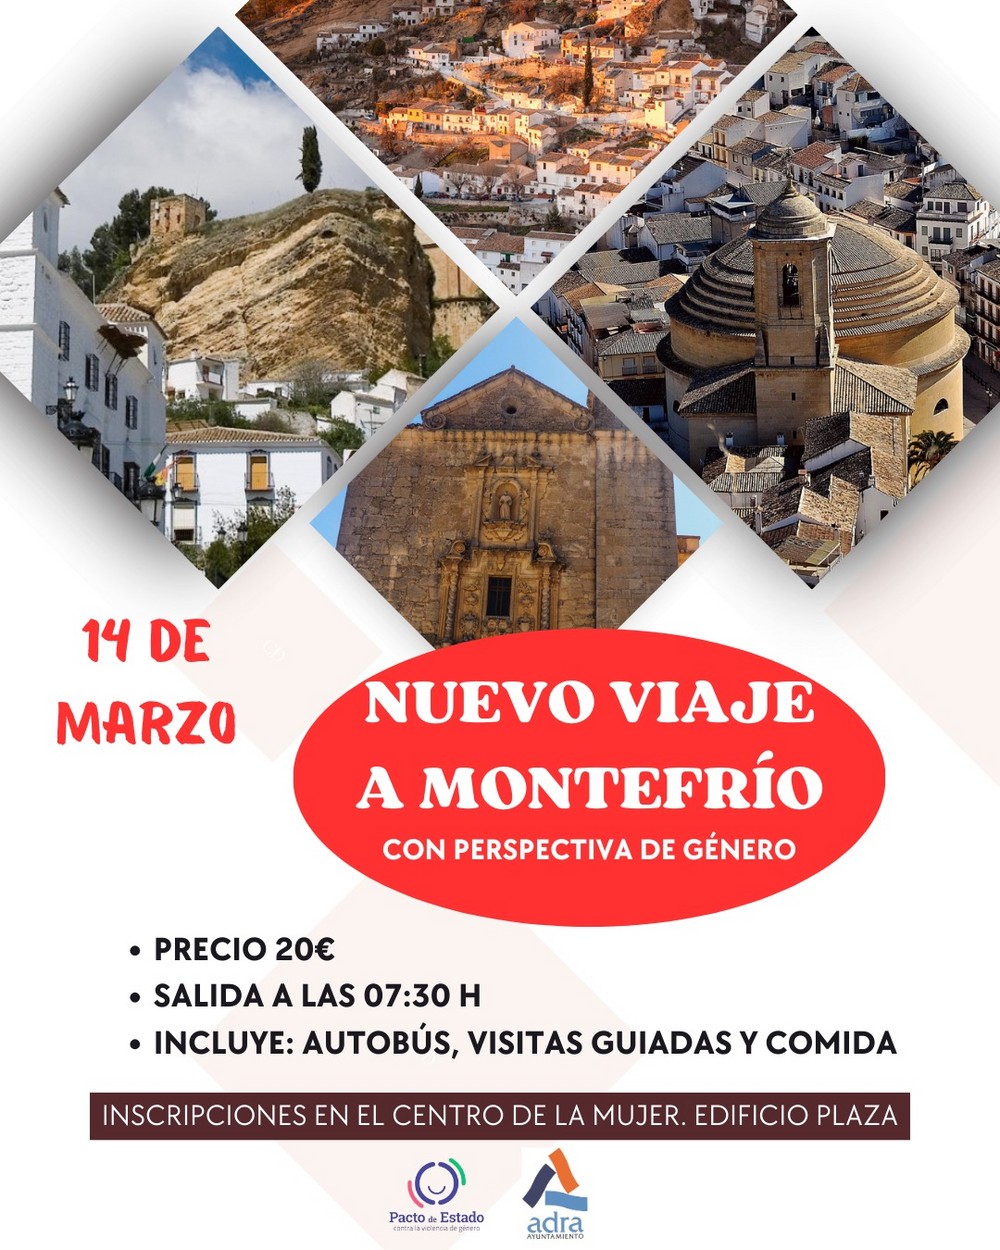 El Ayuntamiento de Adra organiza un segundo viaje con perspectiva de género a Montefrío el próximo 14 de marzo